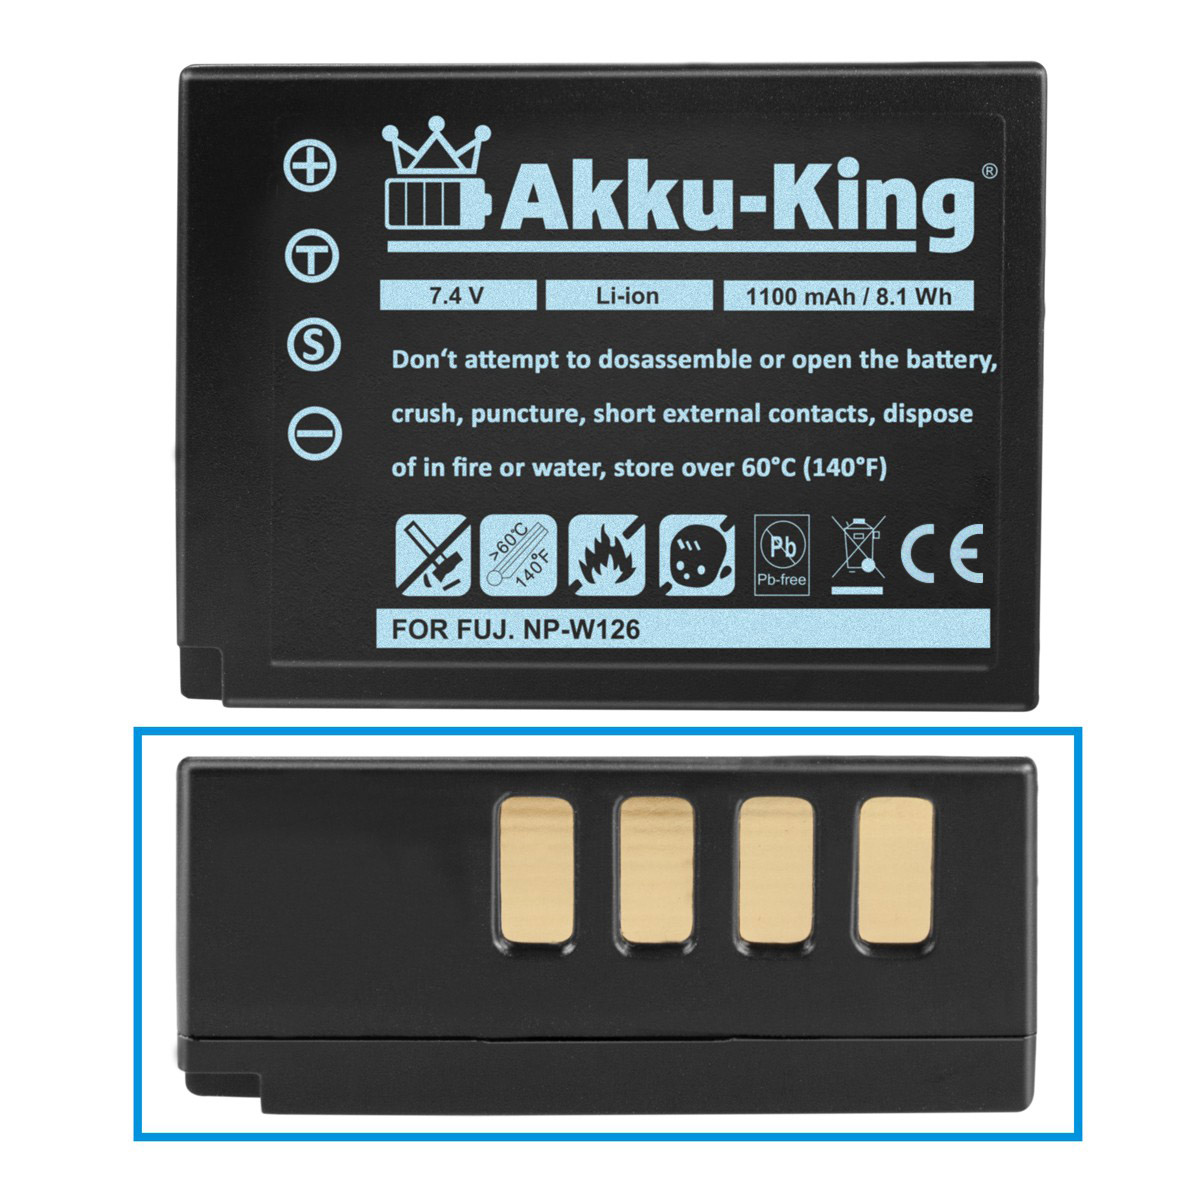 AKKU-KING Fuji NP-W126 mit 7.4 1100mAh Akku kompatibel Li-Ion Kamera-Akku, Volt,